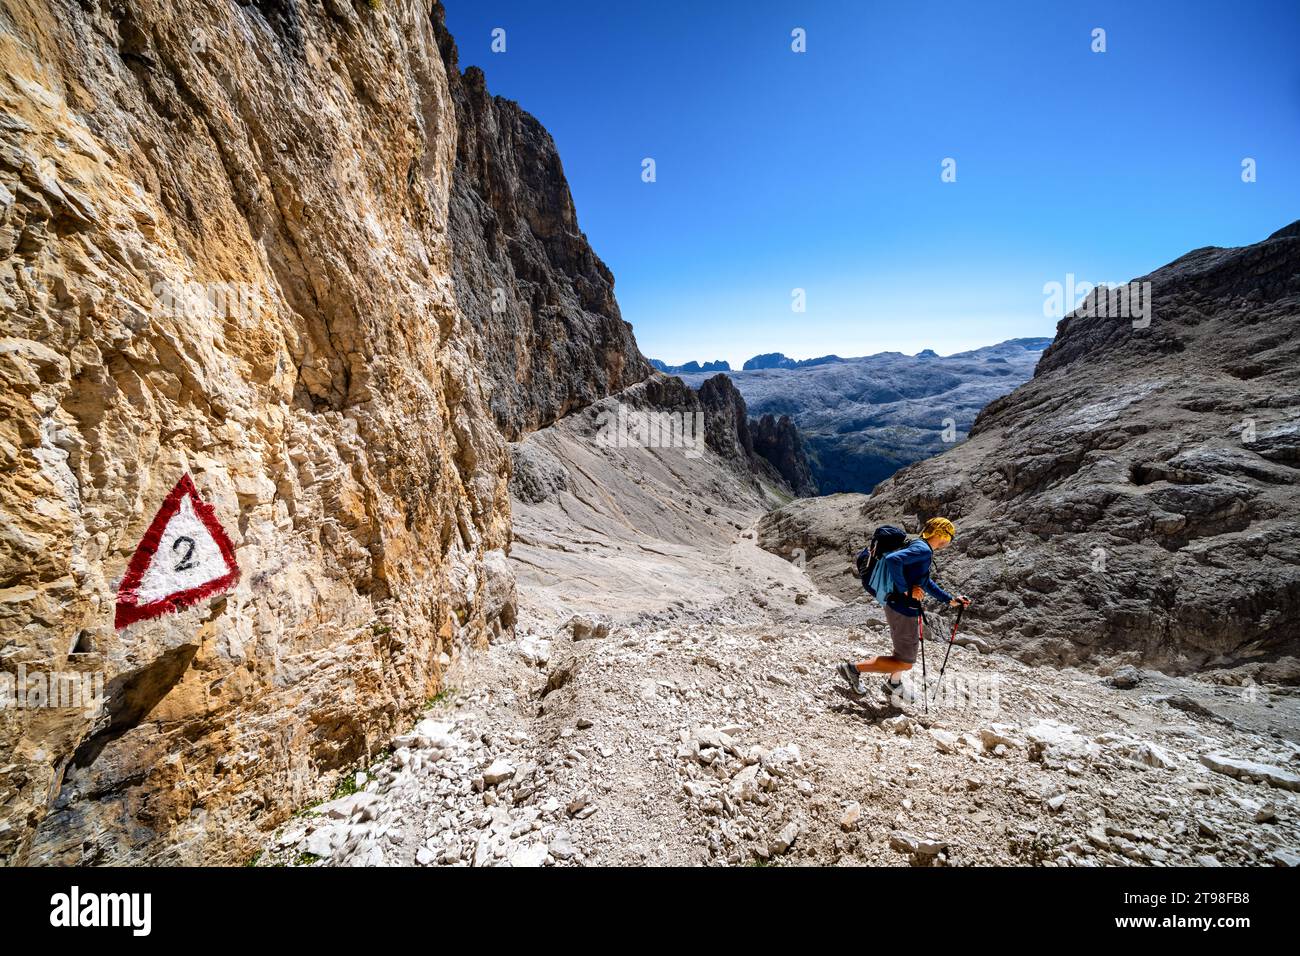 On Alta Via 2 hiking route near Mulaz, Italy Stock Photo